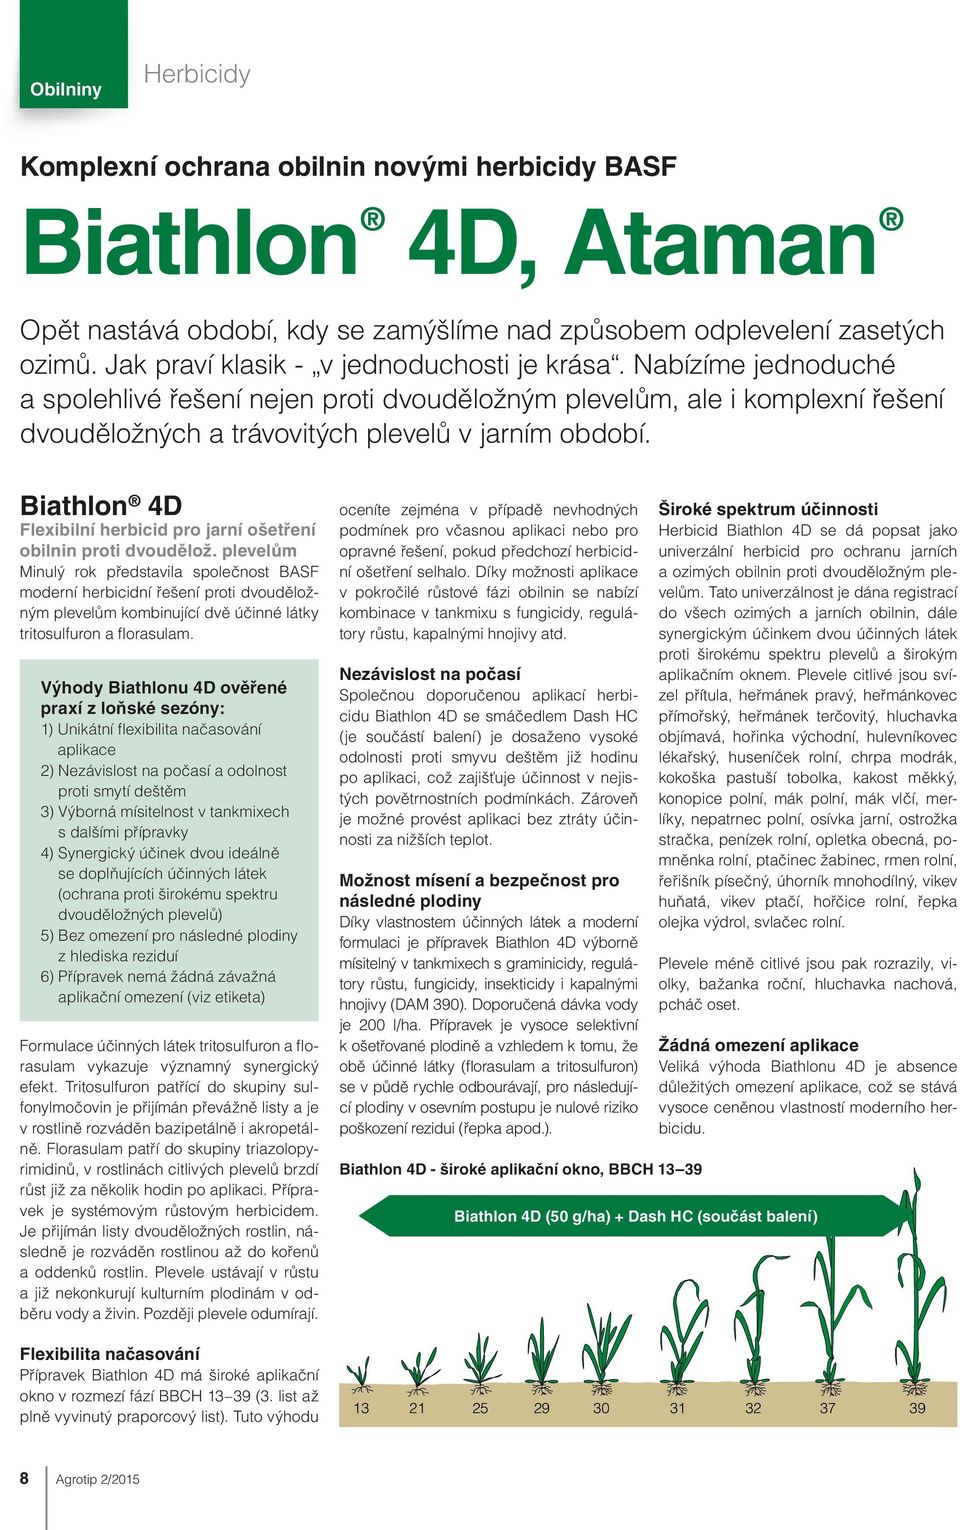 Biathlon 4D Flexibilní herbicid pro jarní ošetření obilnin proti dvoudělož.